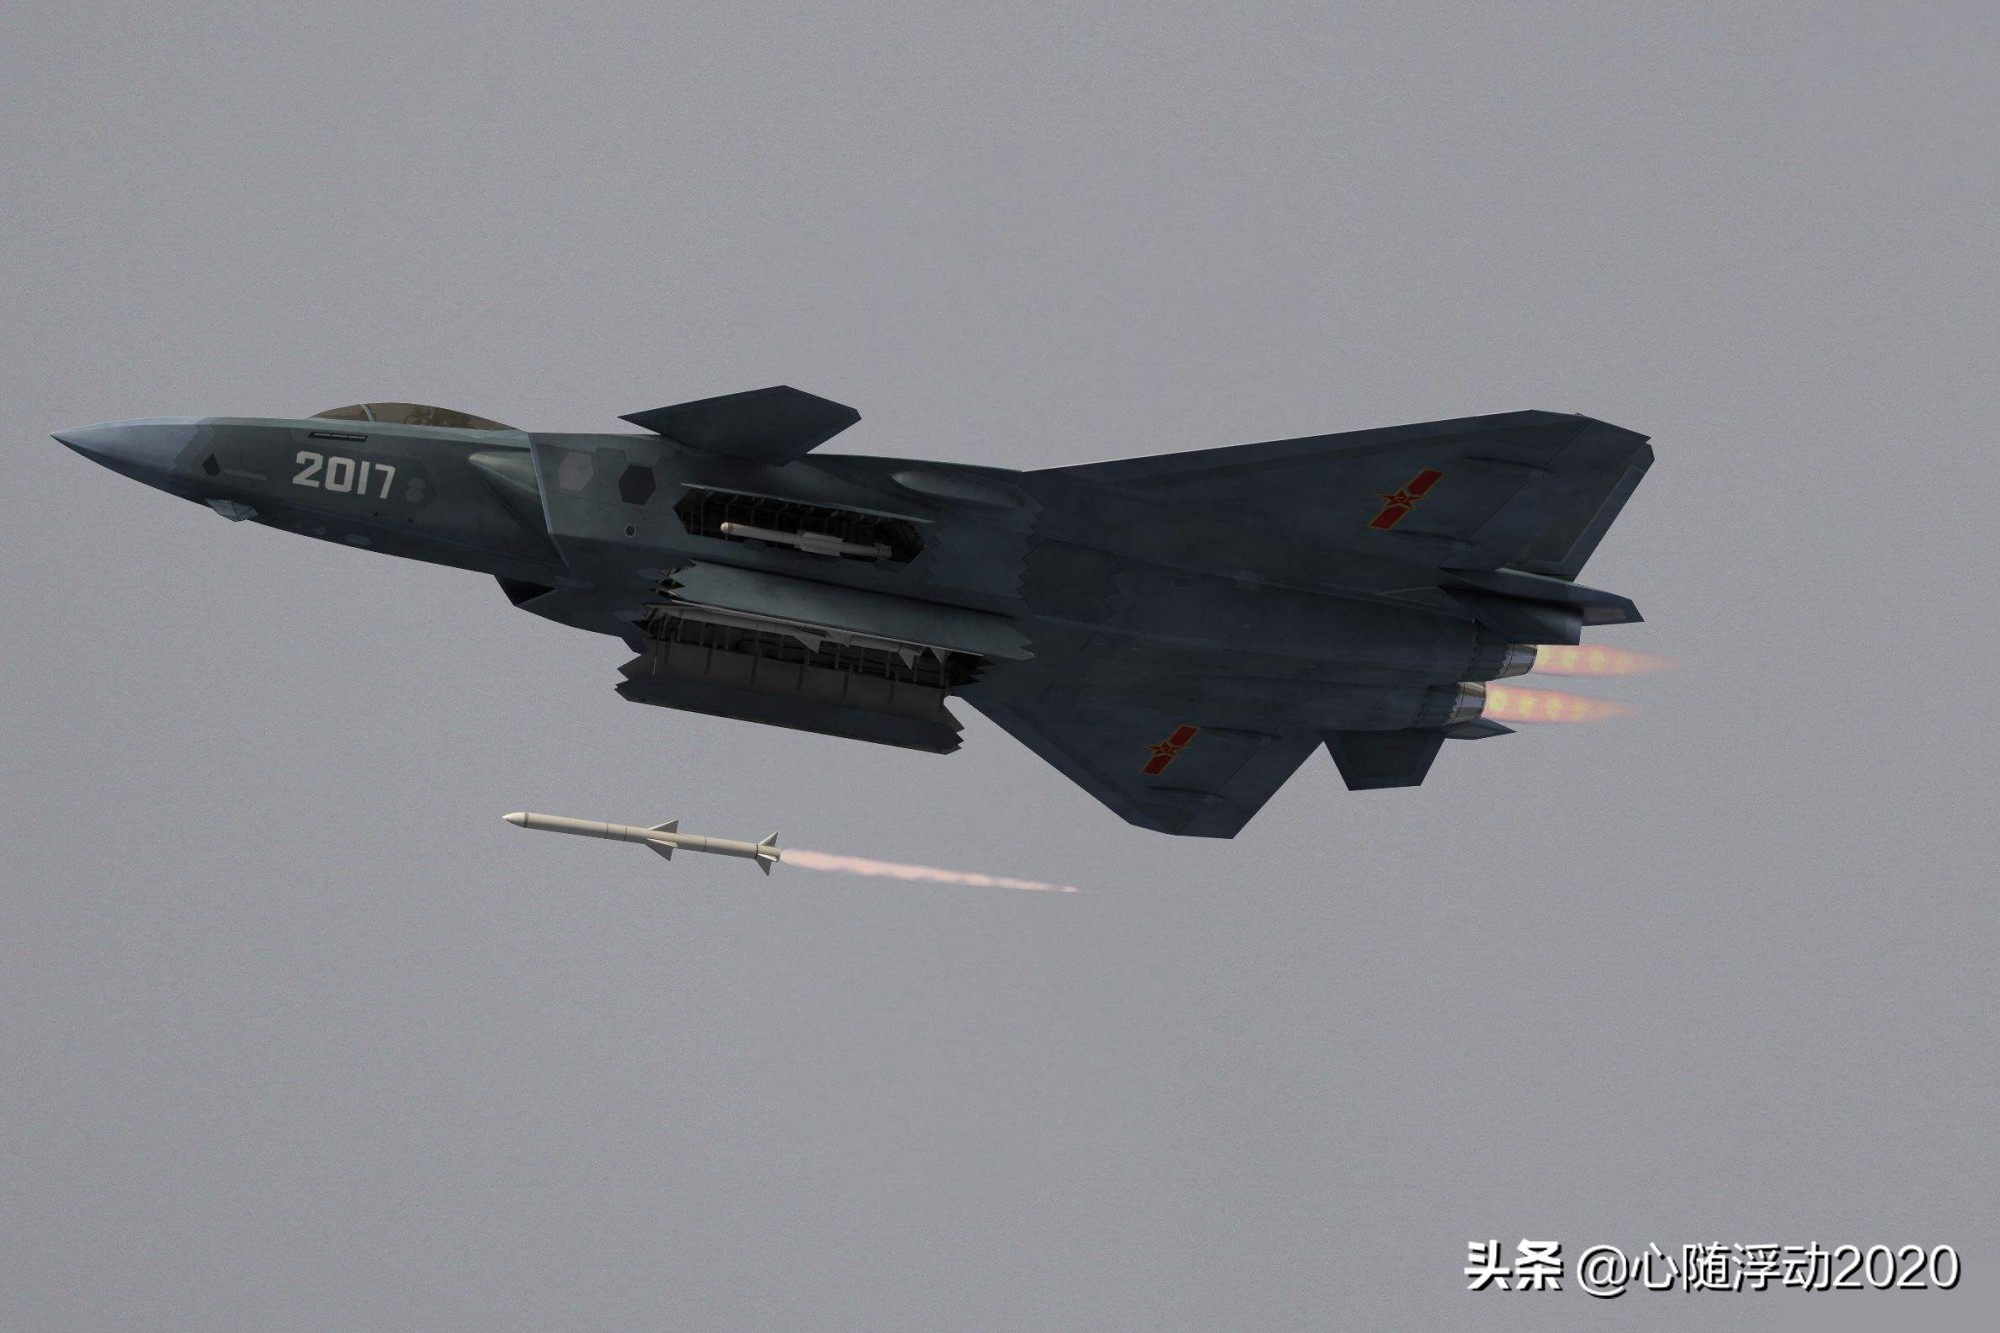 歼-20的鸭翼气动布局足够优秀，难怪在中国航空发展史上留下一笔